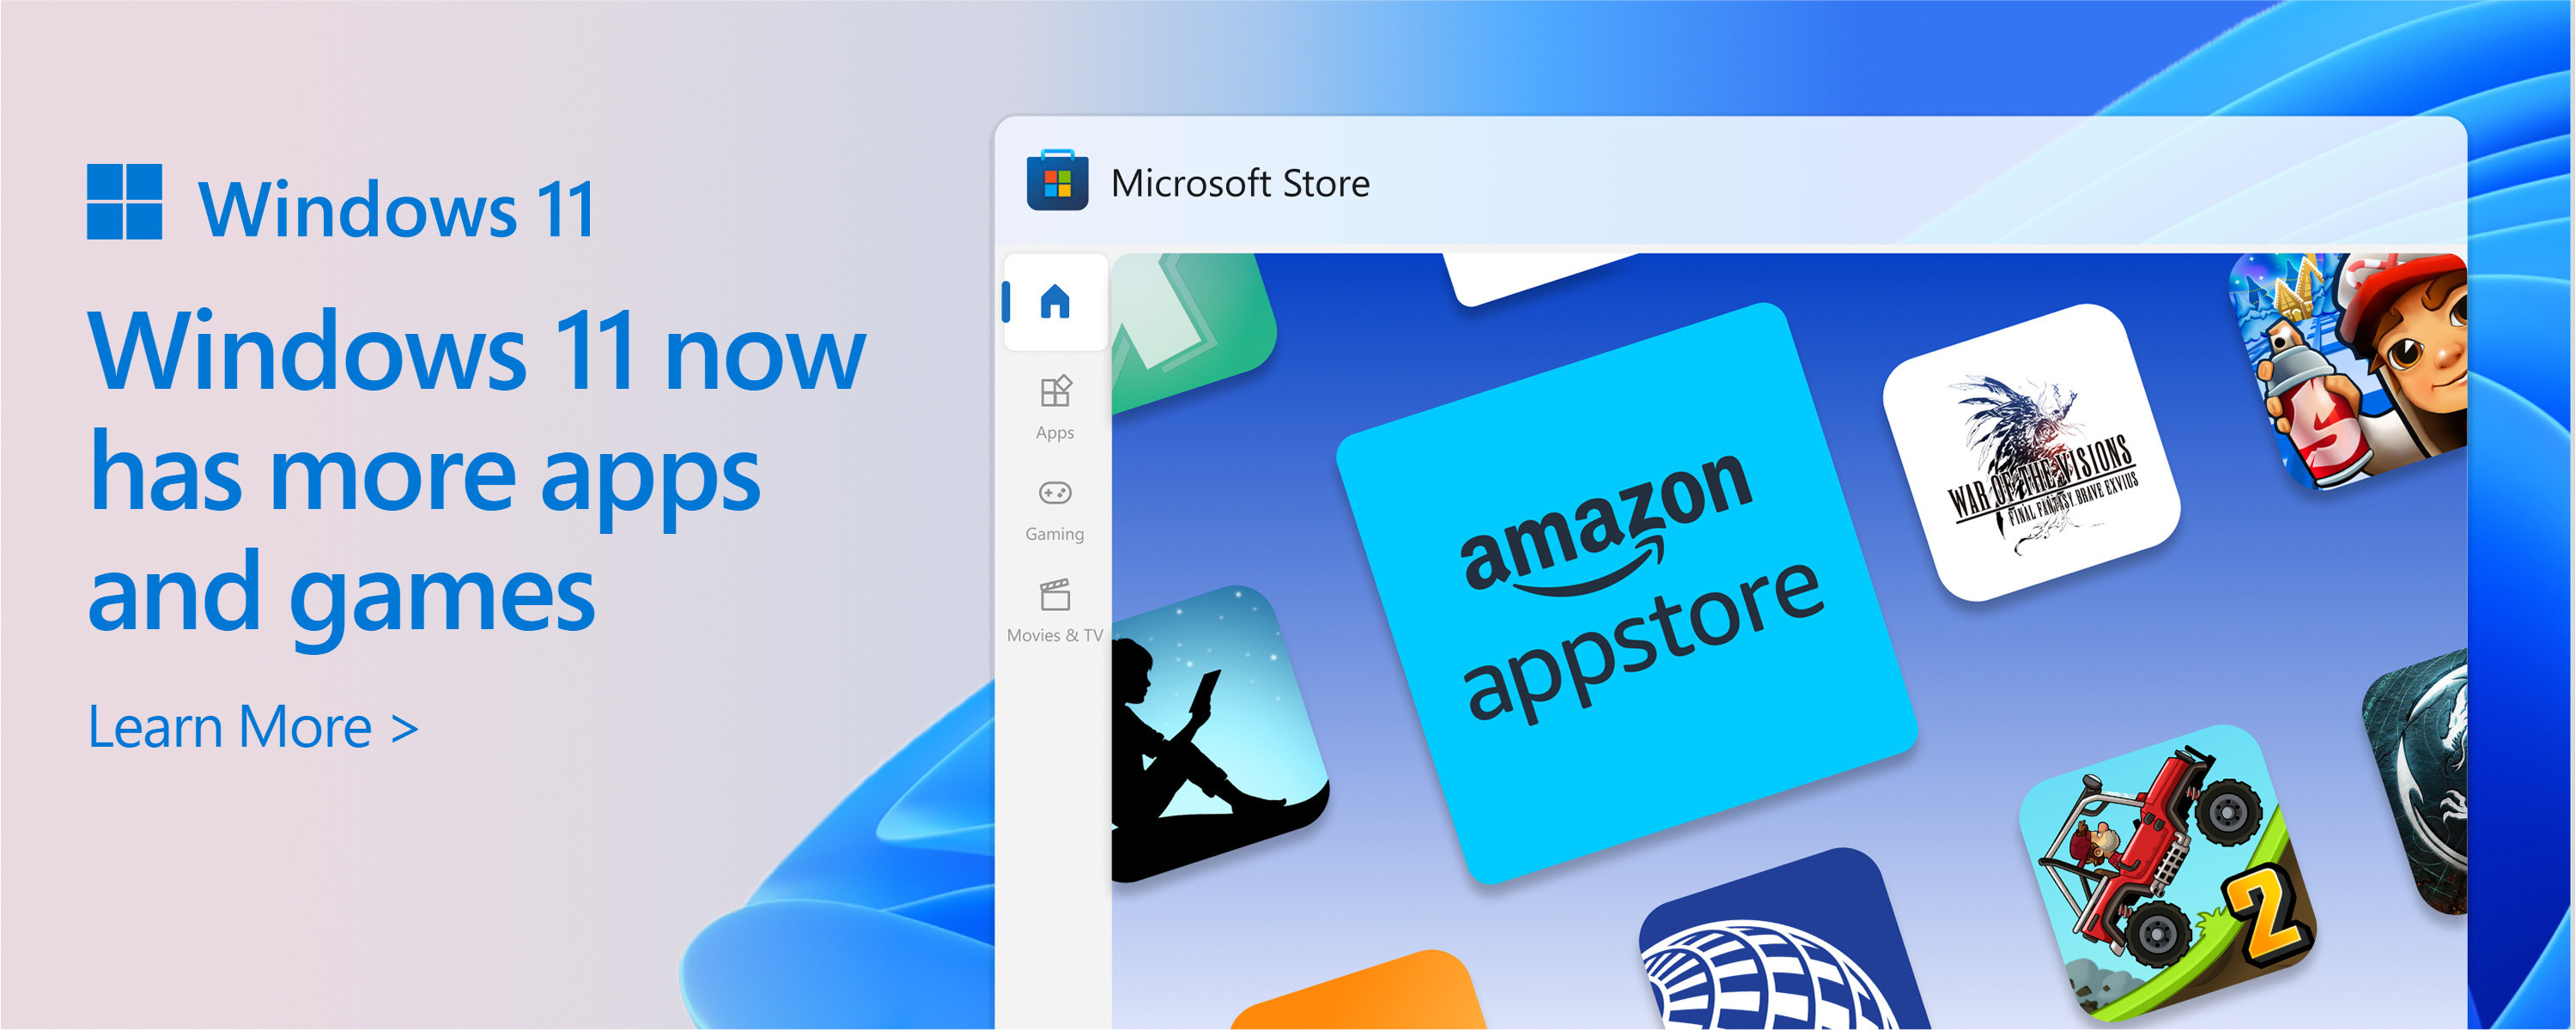 Cuplikan layar Microsoft Store dengan teks: Katalog Microsoft Store sedang berkembang. Windows 11 memberi Anda lebih banyak aplikasi dan permainan yang Anda inginkan dan butuhkan.